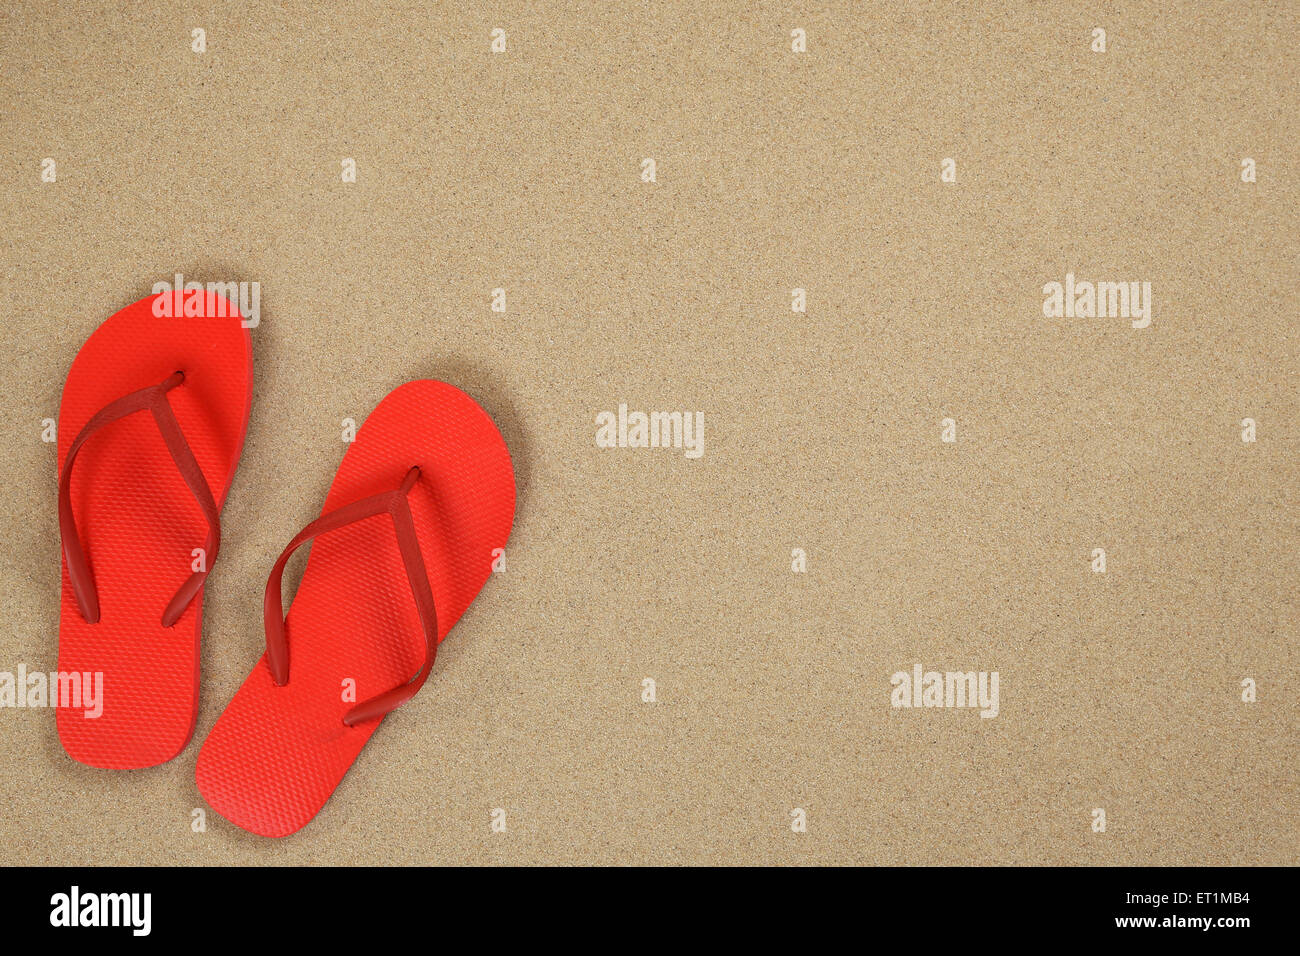 Sandals in sand immagini e fotografie stock ad alta risoluzione - Alamy